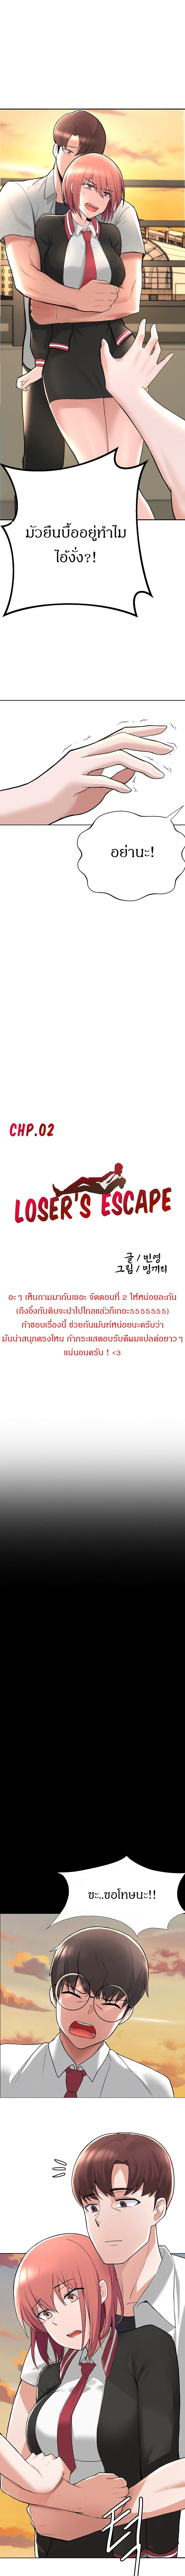 Escape Loser 2-2